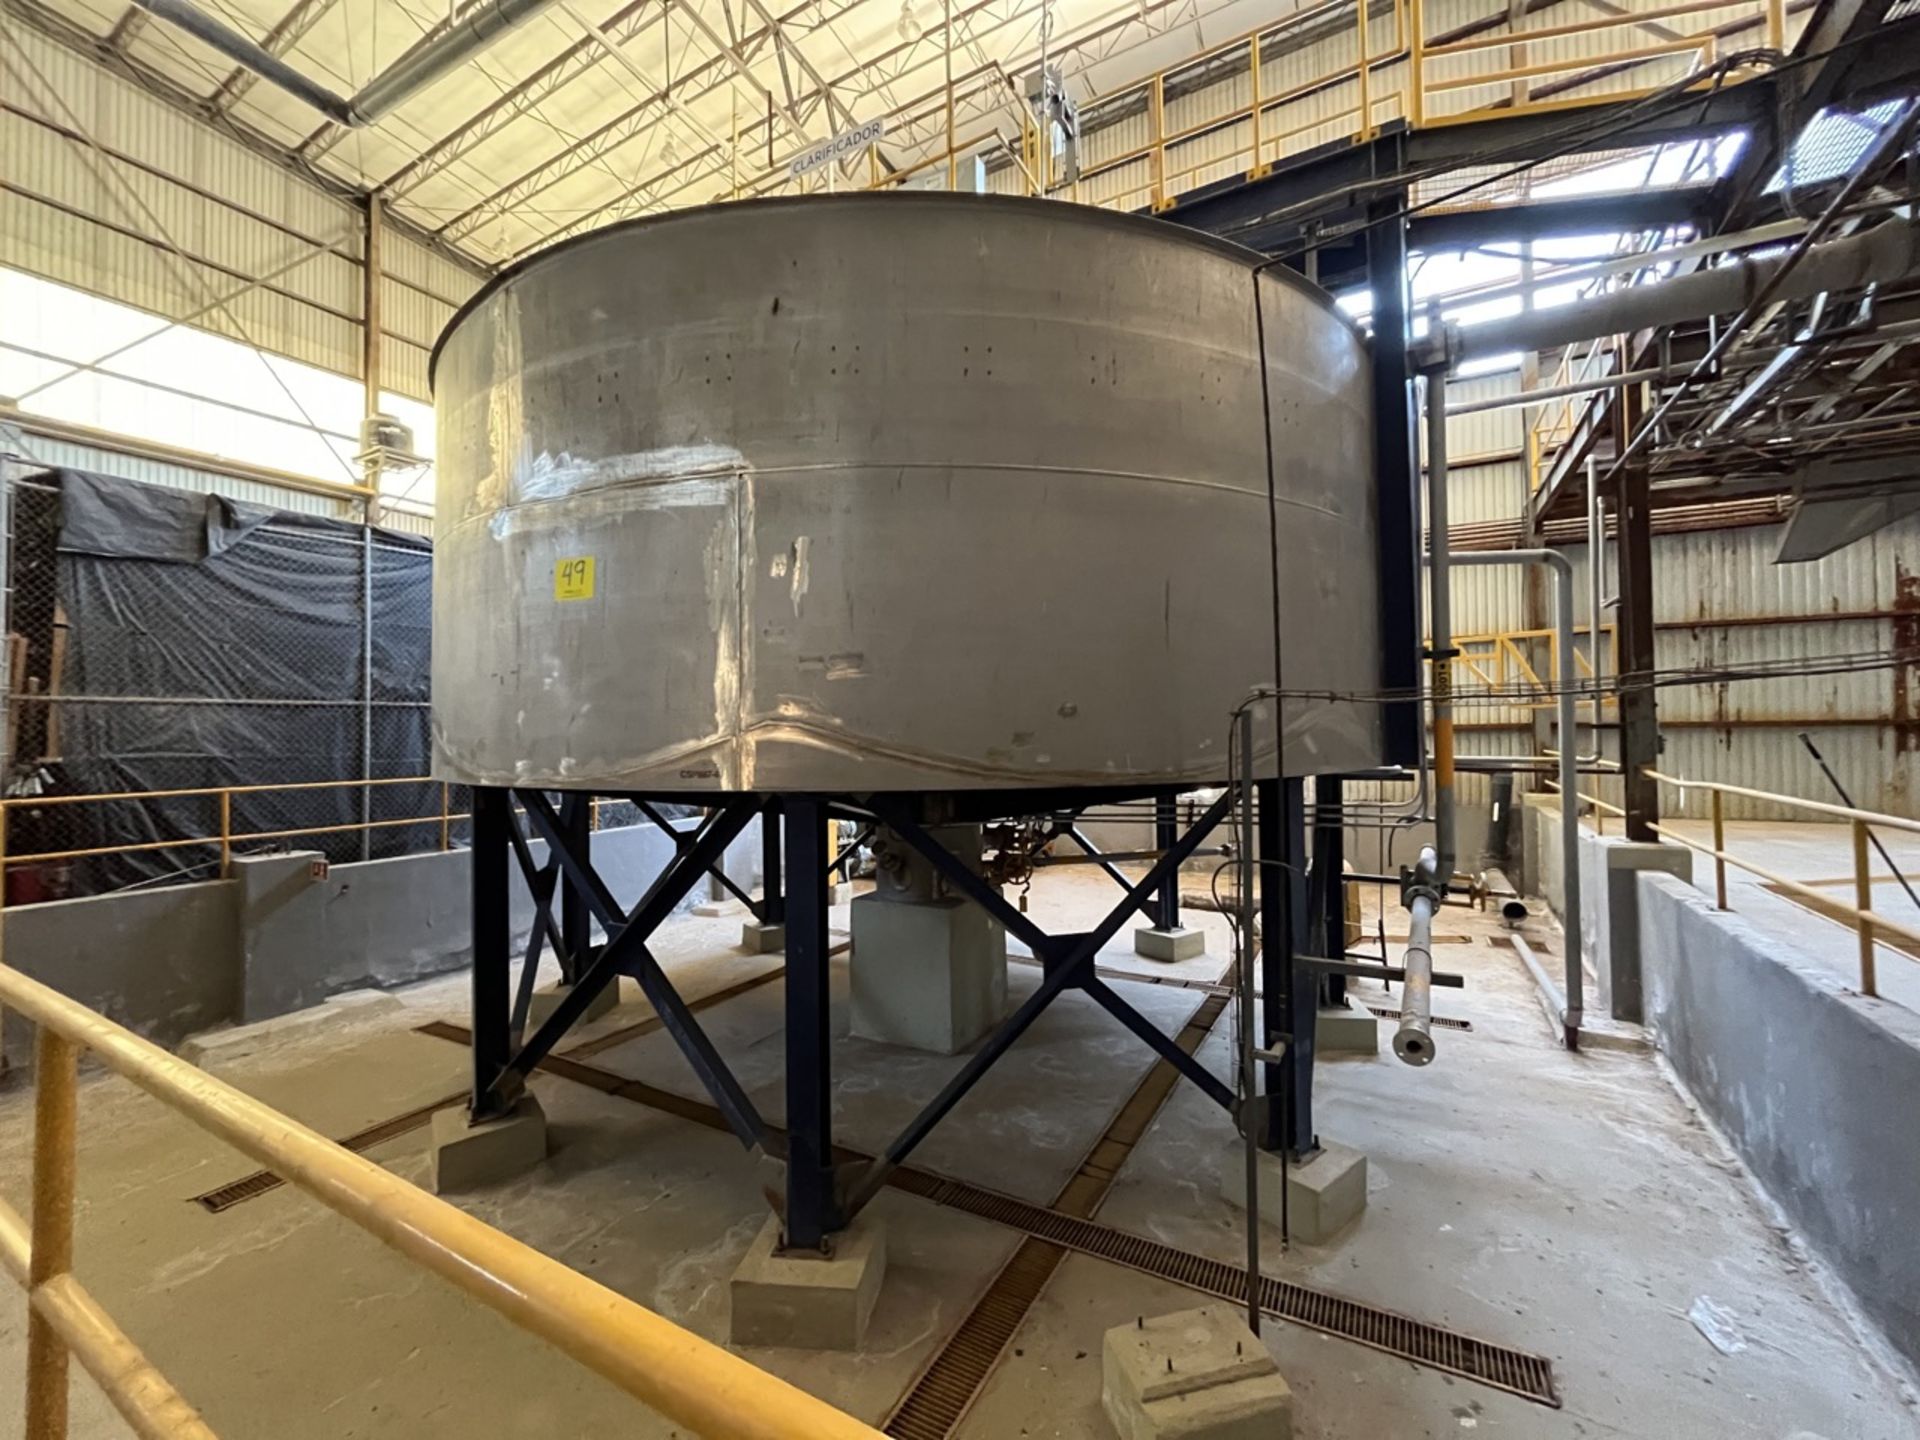 Stainless steel storage tank, measuring approximately 7 meters in diameter x 5.50 meters in height - Image 8 of 20